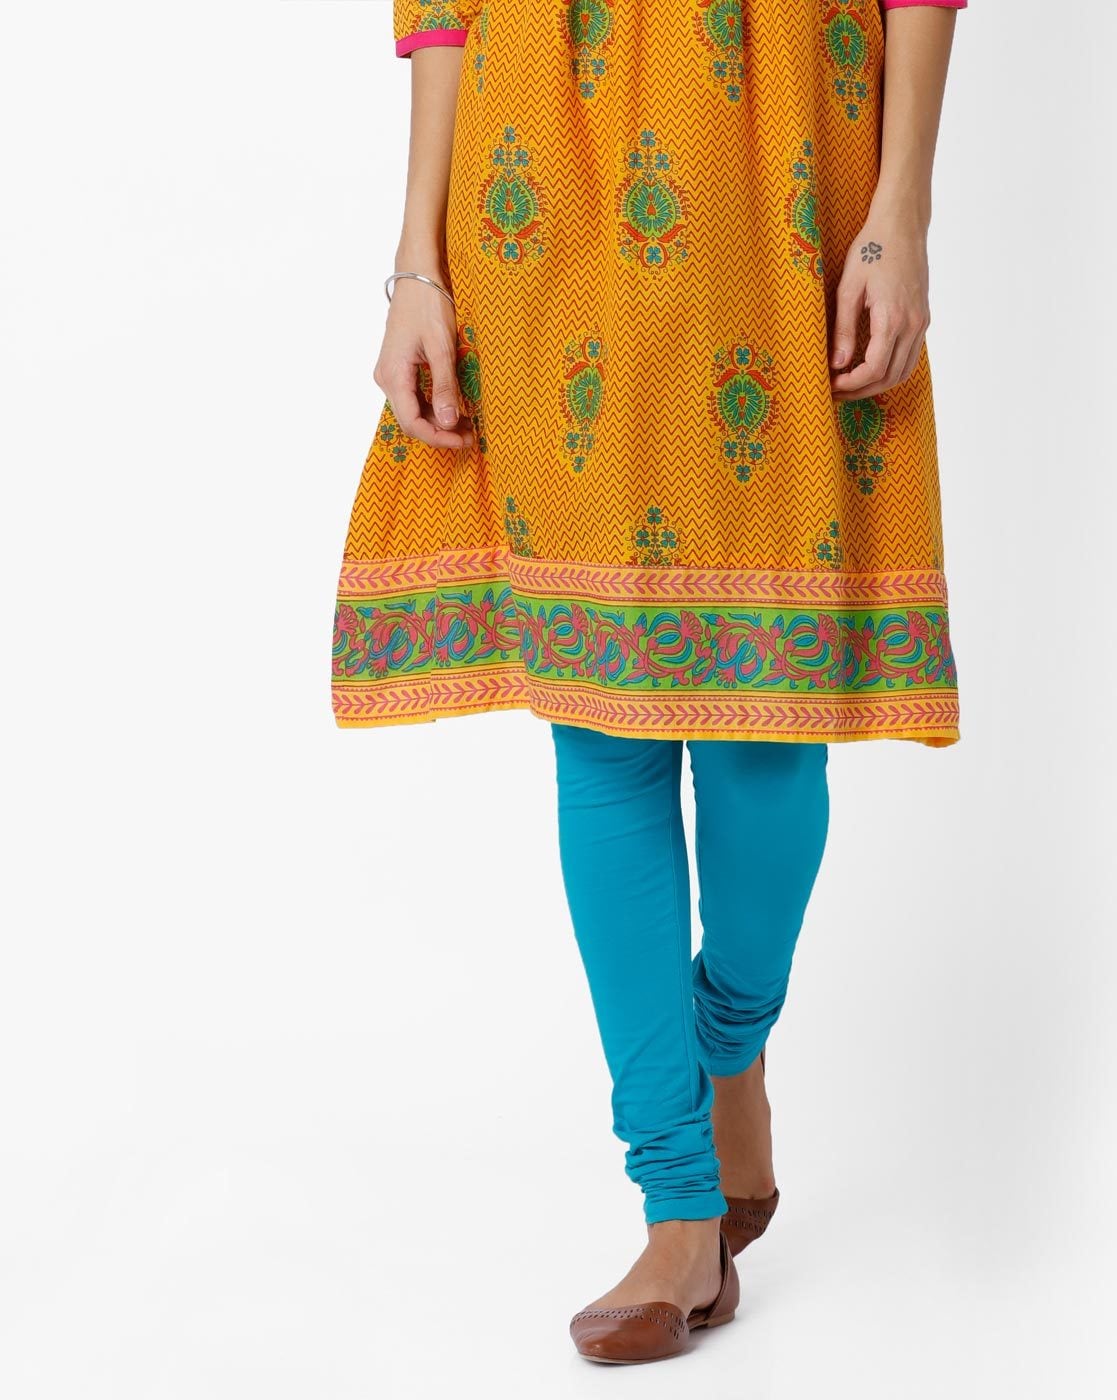 Enjoy more than 159 blue leggings matching kurti latest